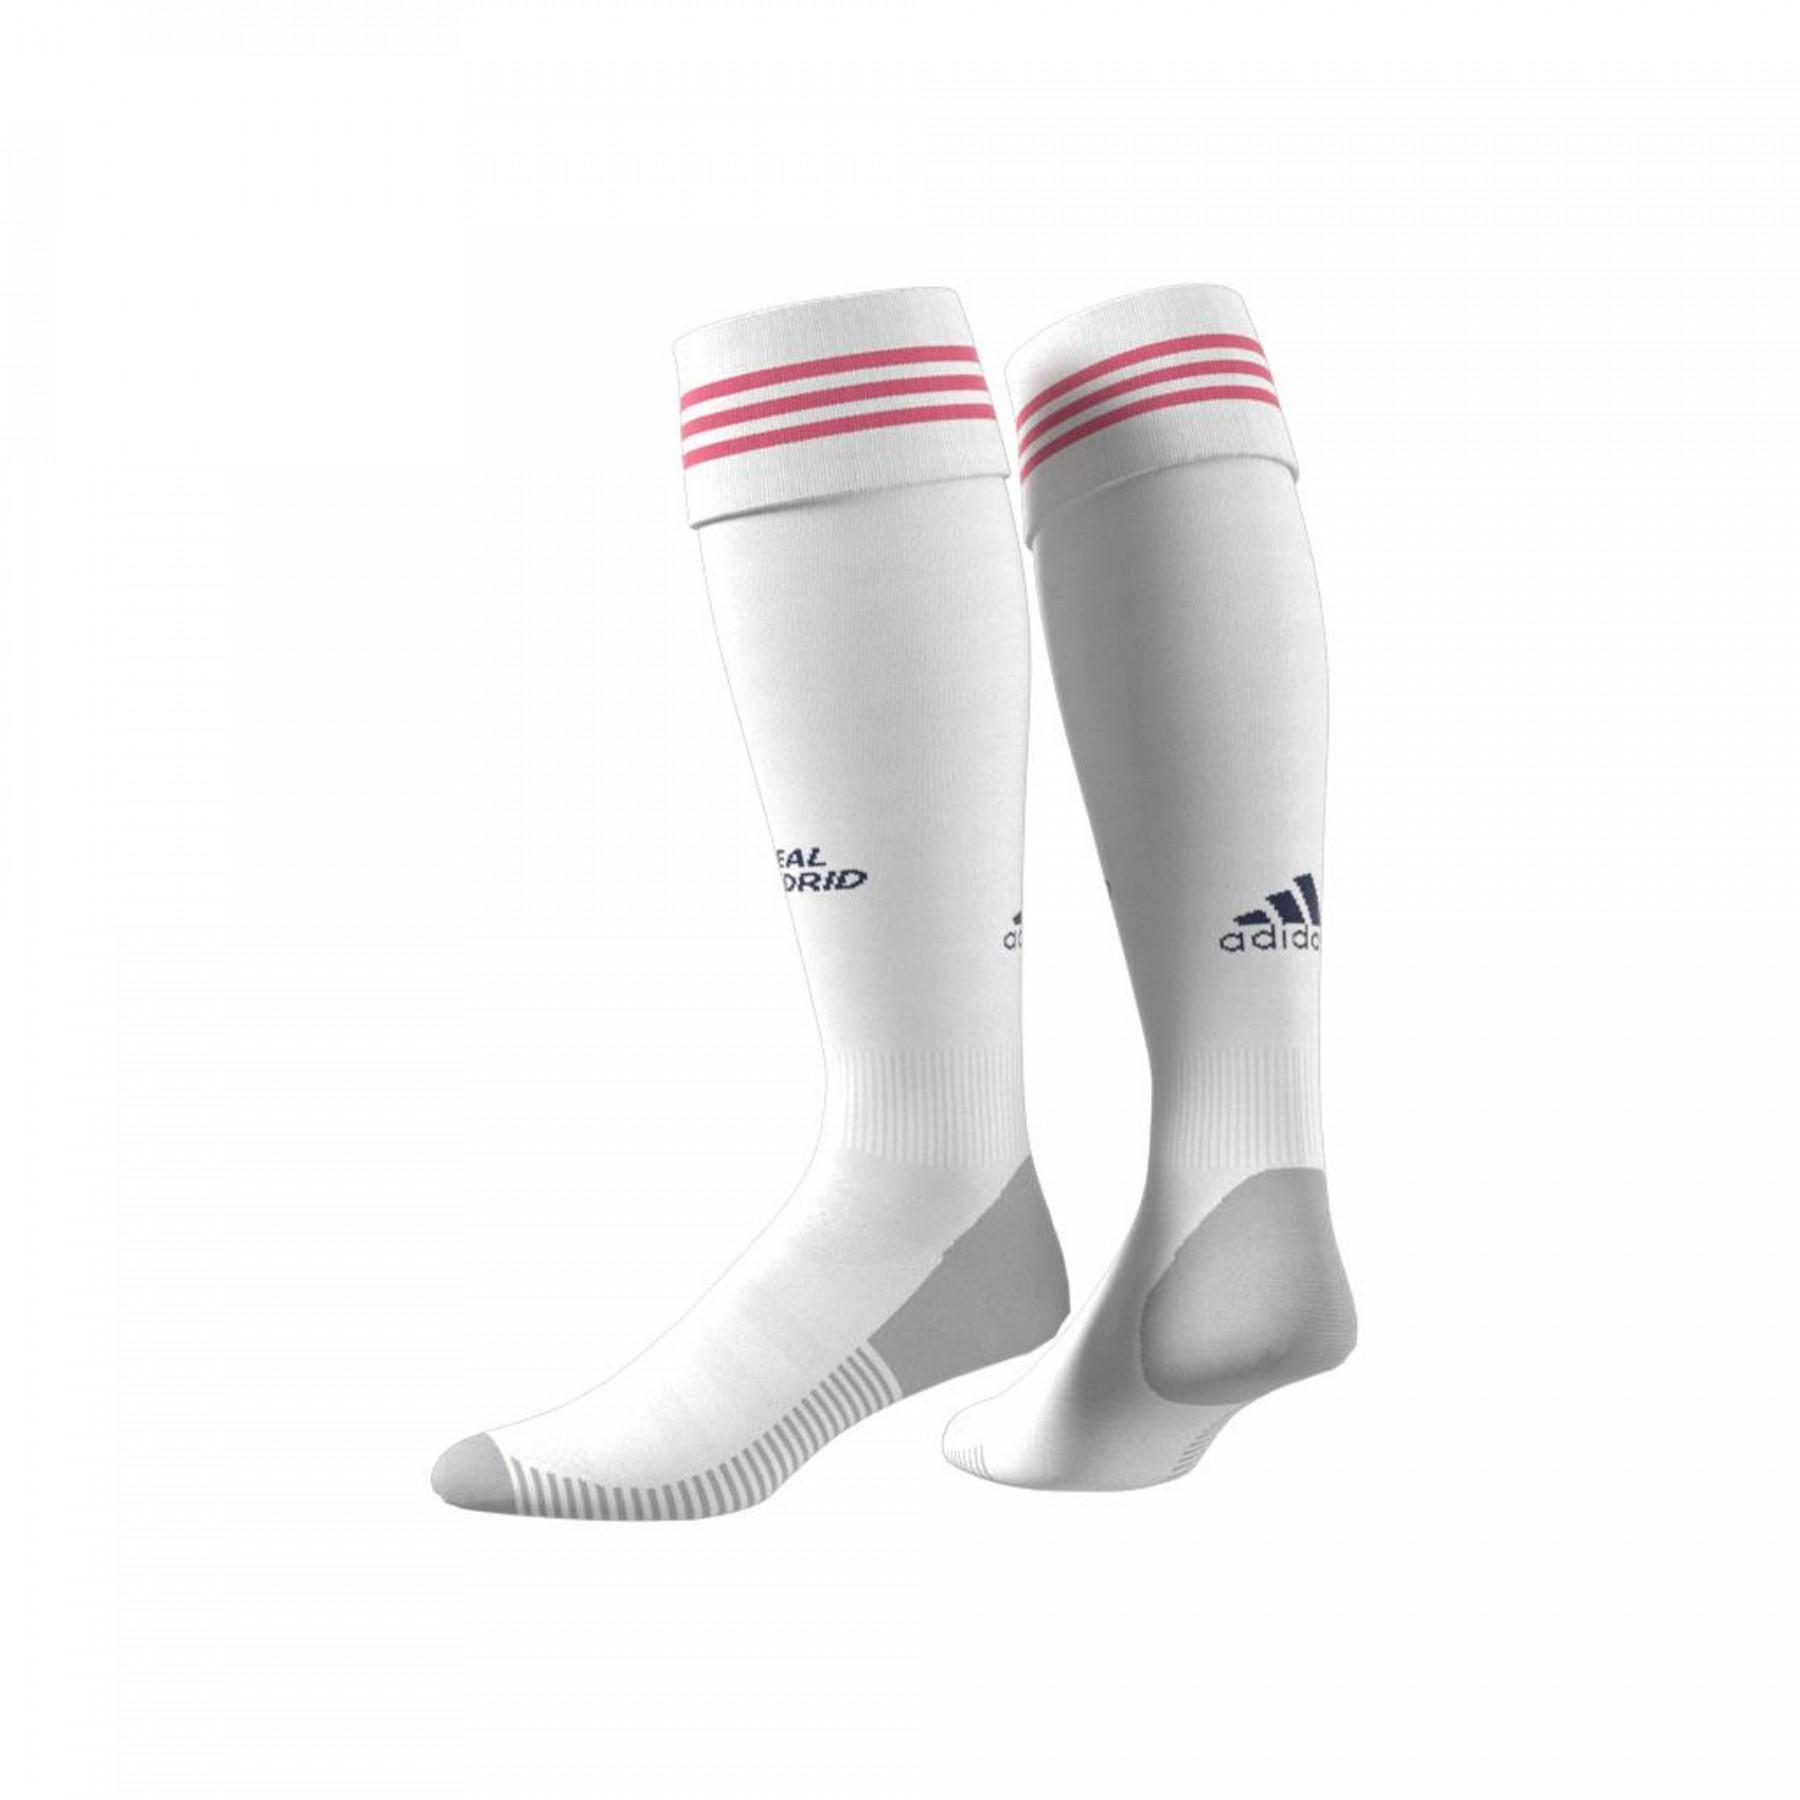 Adidas Real Madrid socks